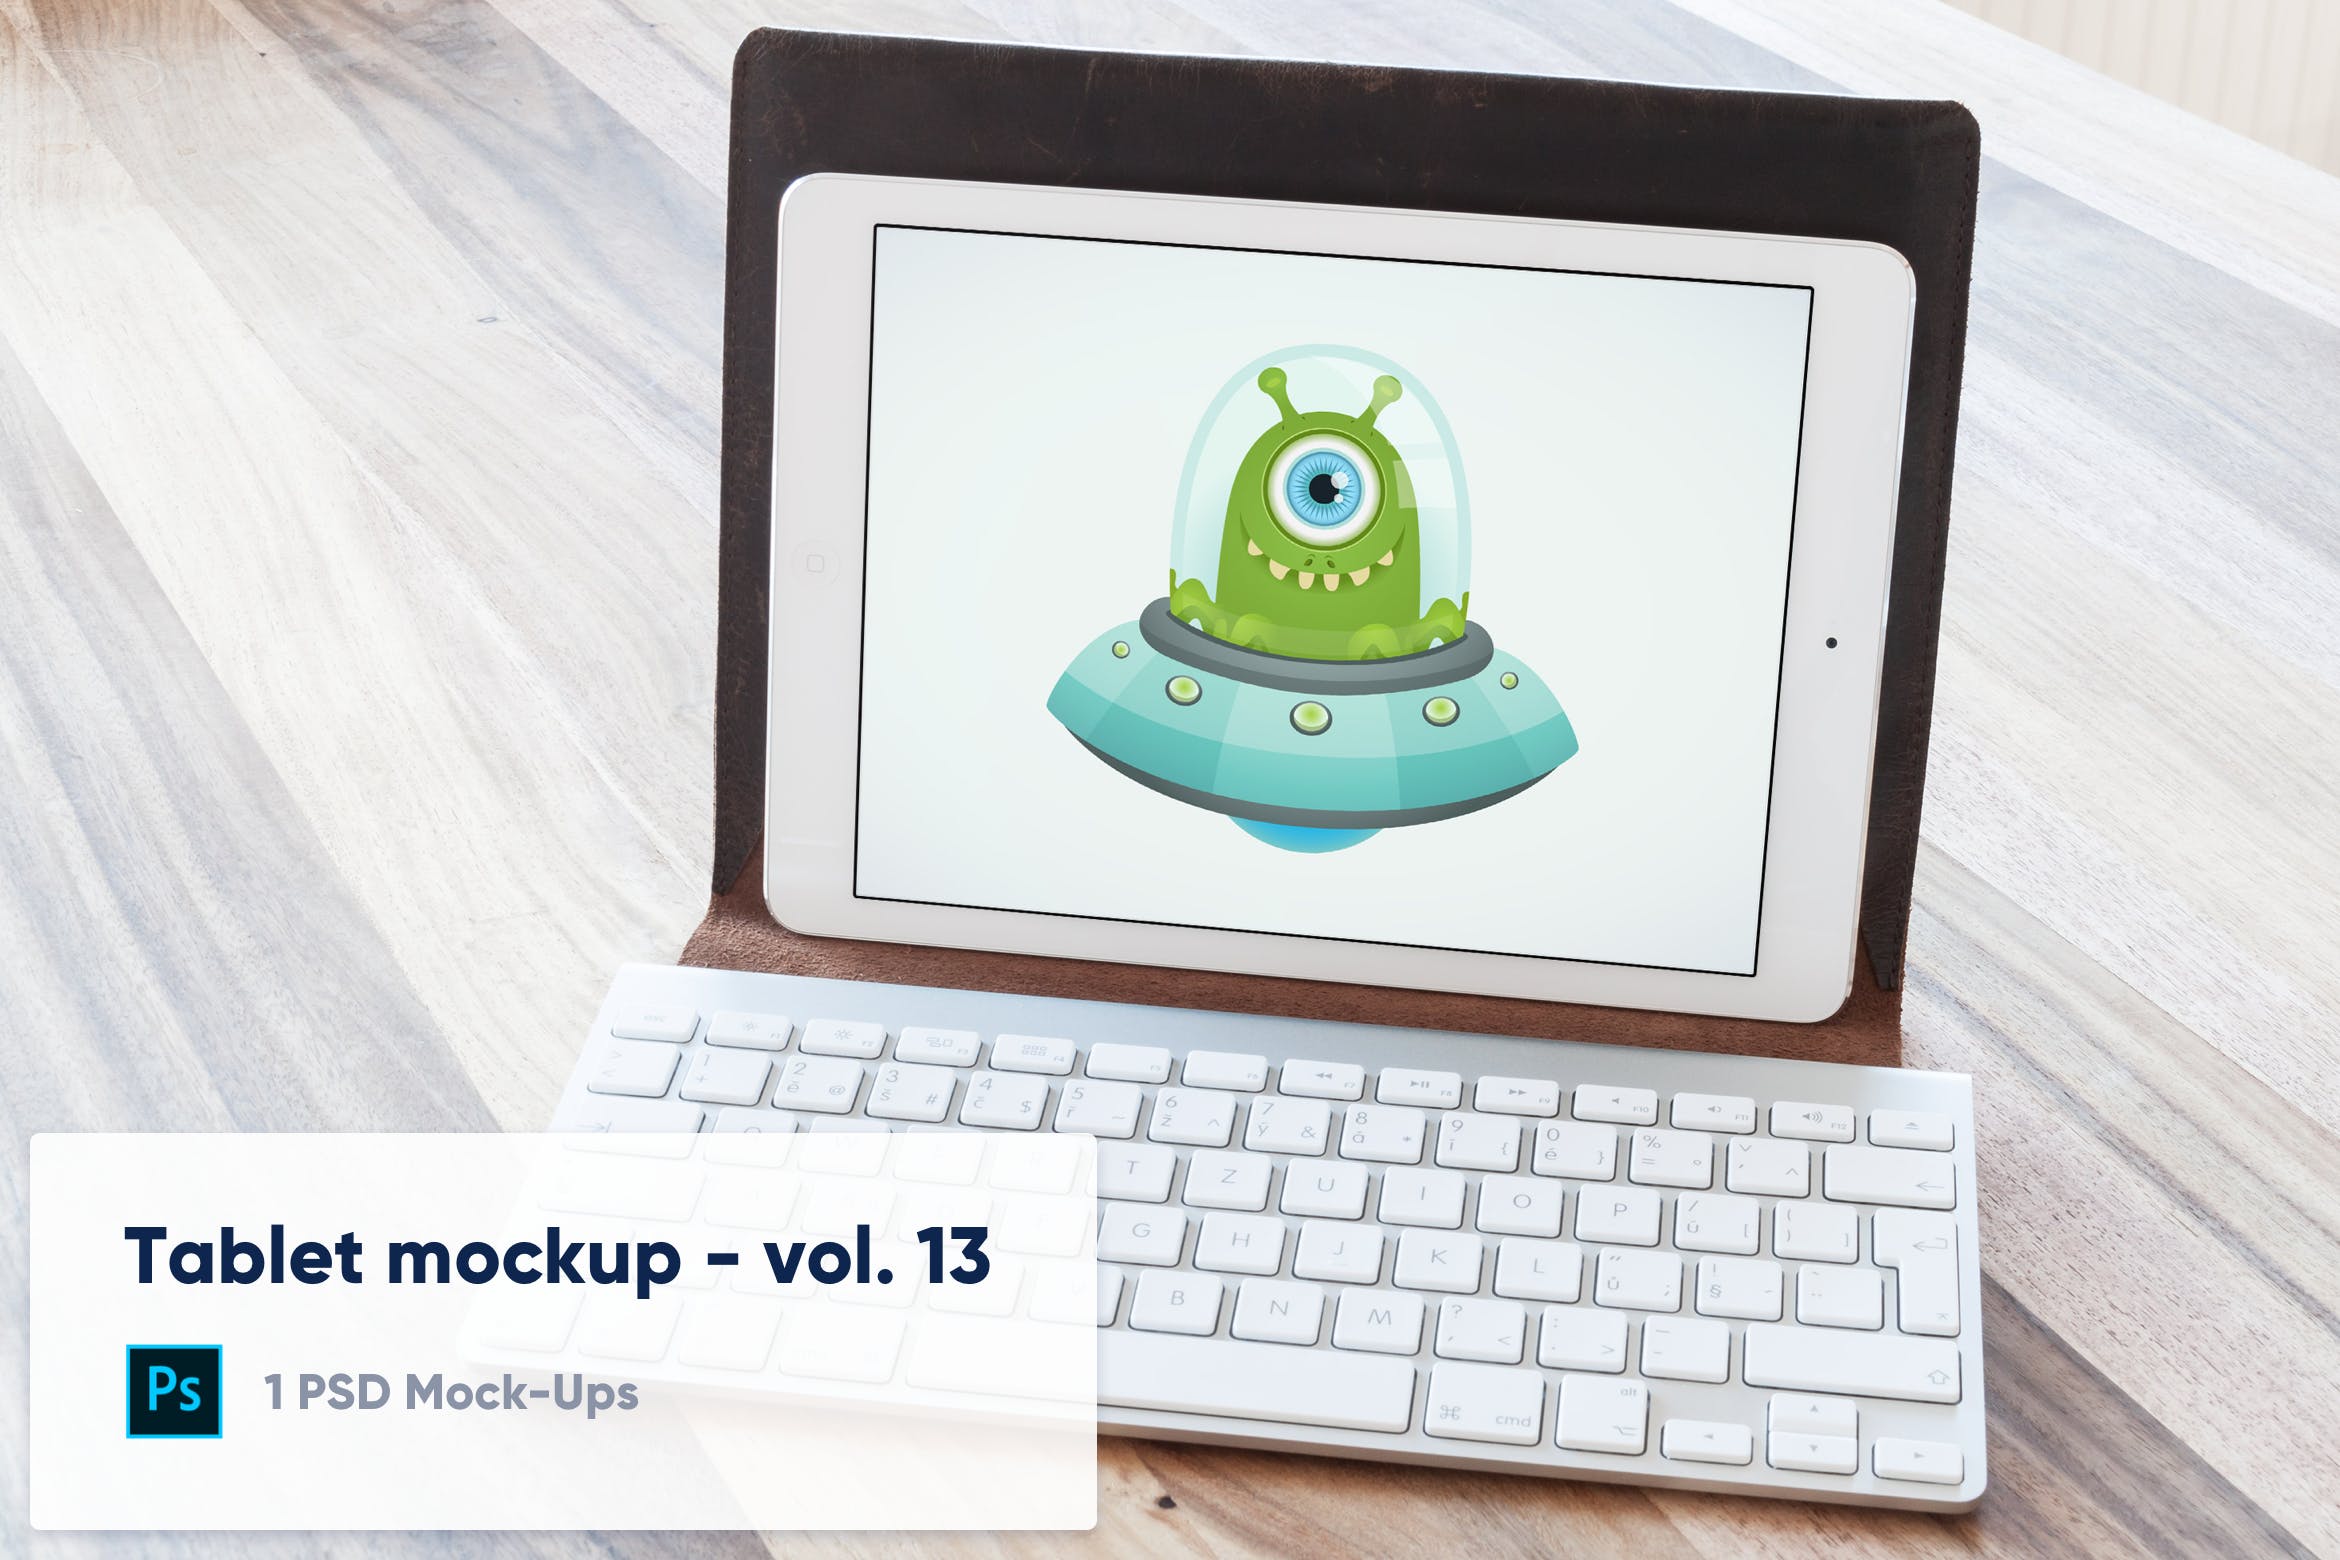 附带键盘套的iPad平板电脑屏幕预览素材库精选样机模板v13 Tablet in Keyboard Case Desk Mockup – Vol. 13插图